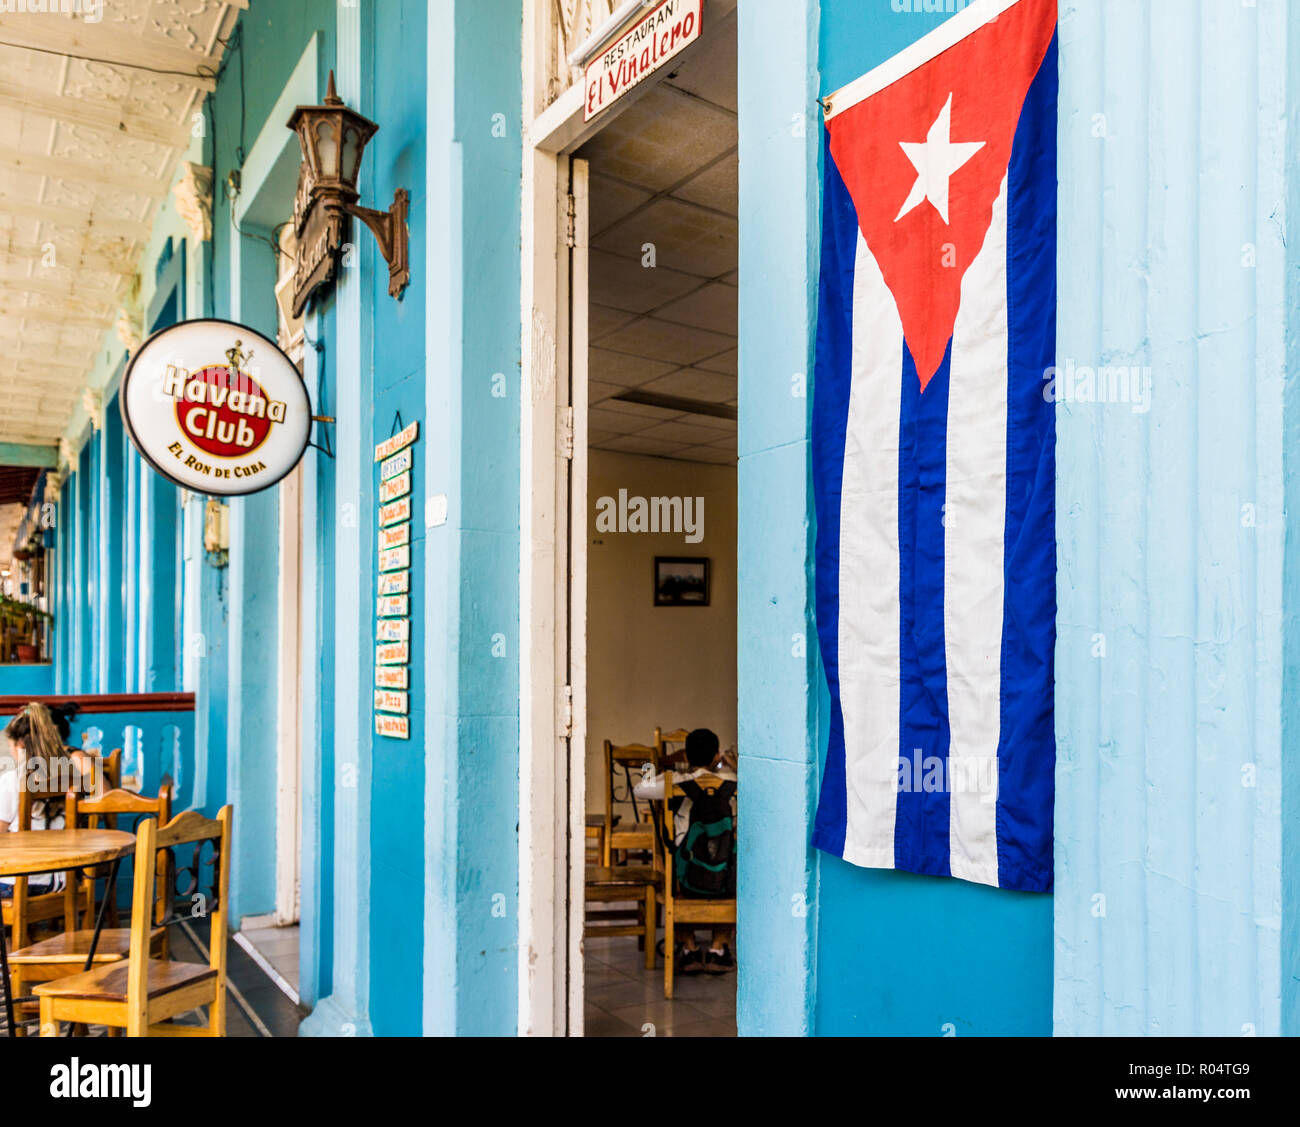 Eine kubanische Flagge vor einem Restaurant in der Stadt, von Vinales Vinales Pinar del Rio, Kuba, Karibik, Karibik, Zentral- und Lateinamerika Stockfoto